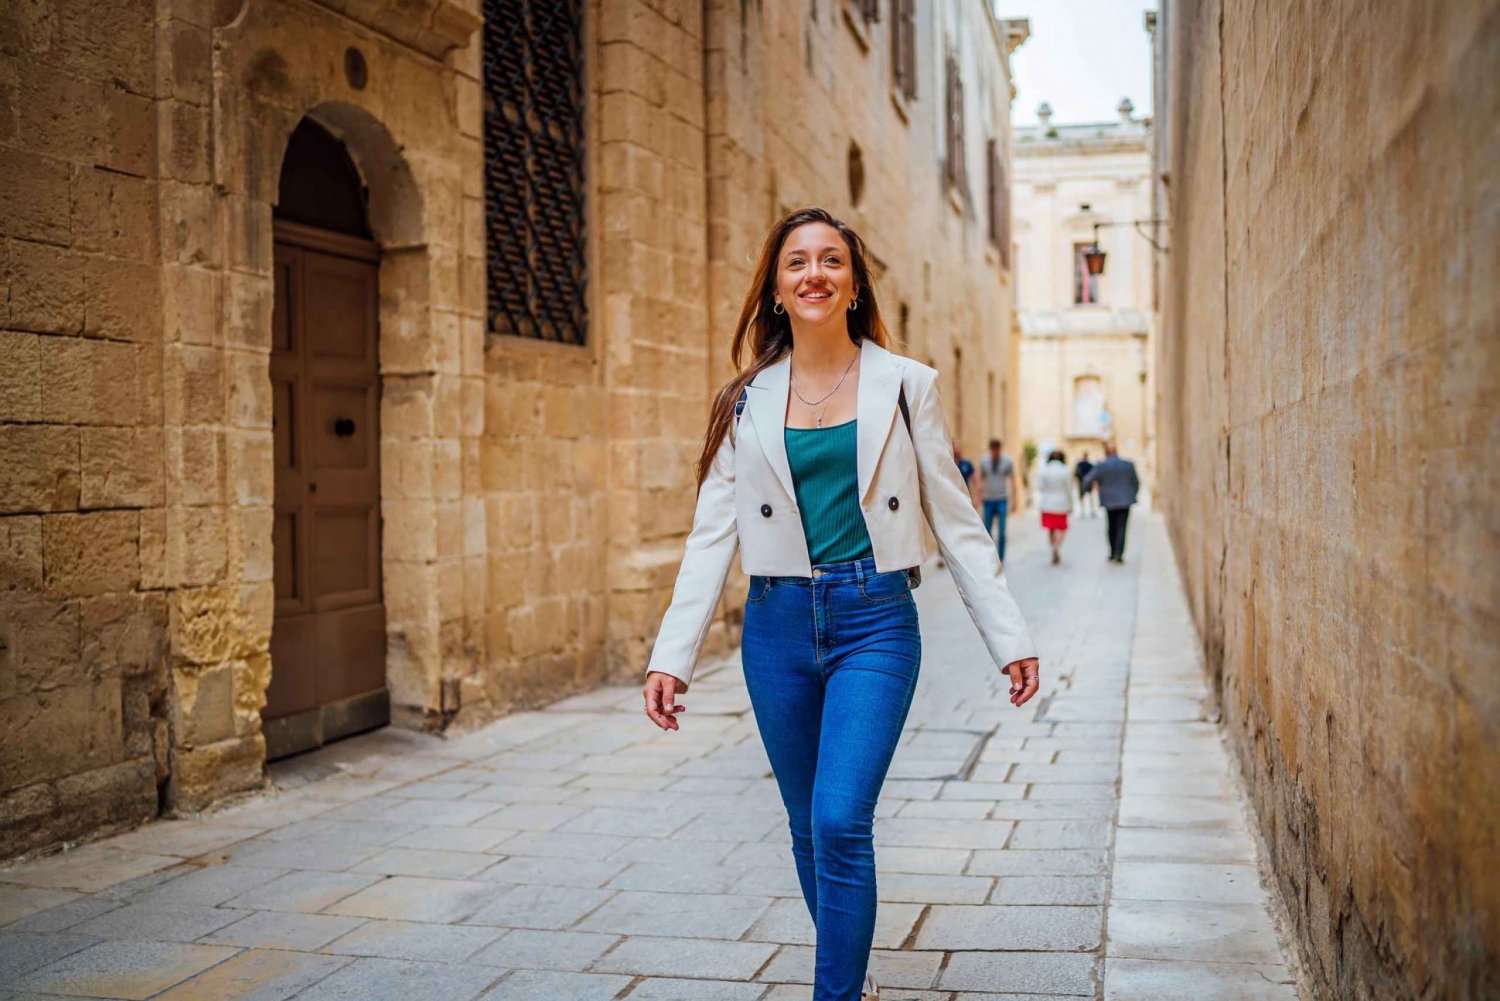 O charme histórico de Valletta: Uma excursão a pé guiada